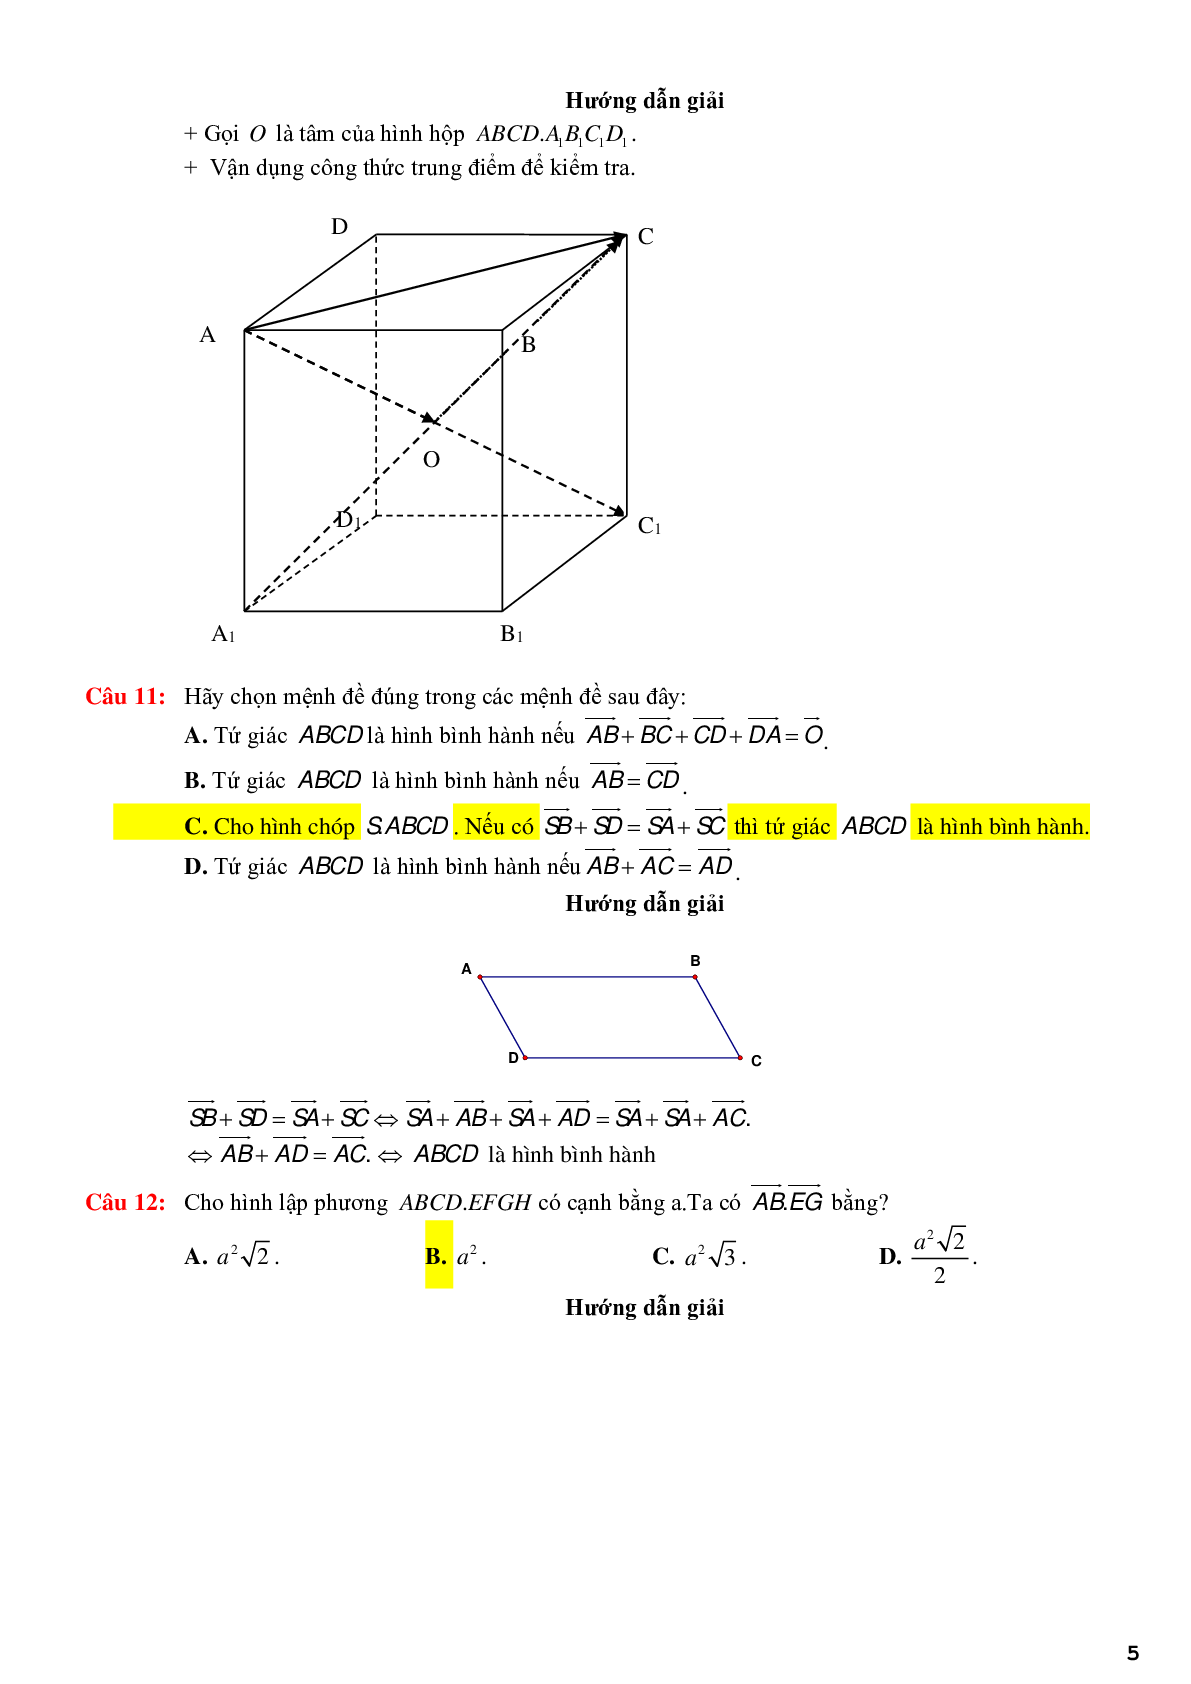 123 bài tập trắc nghiệm quan hệ vuông góc có lời giải chi tiết (trang 5)